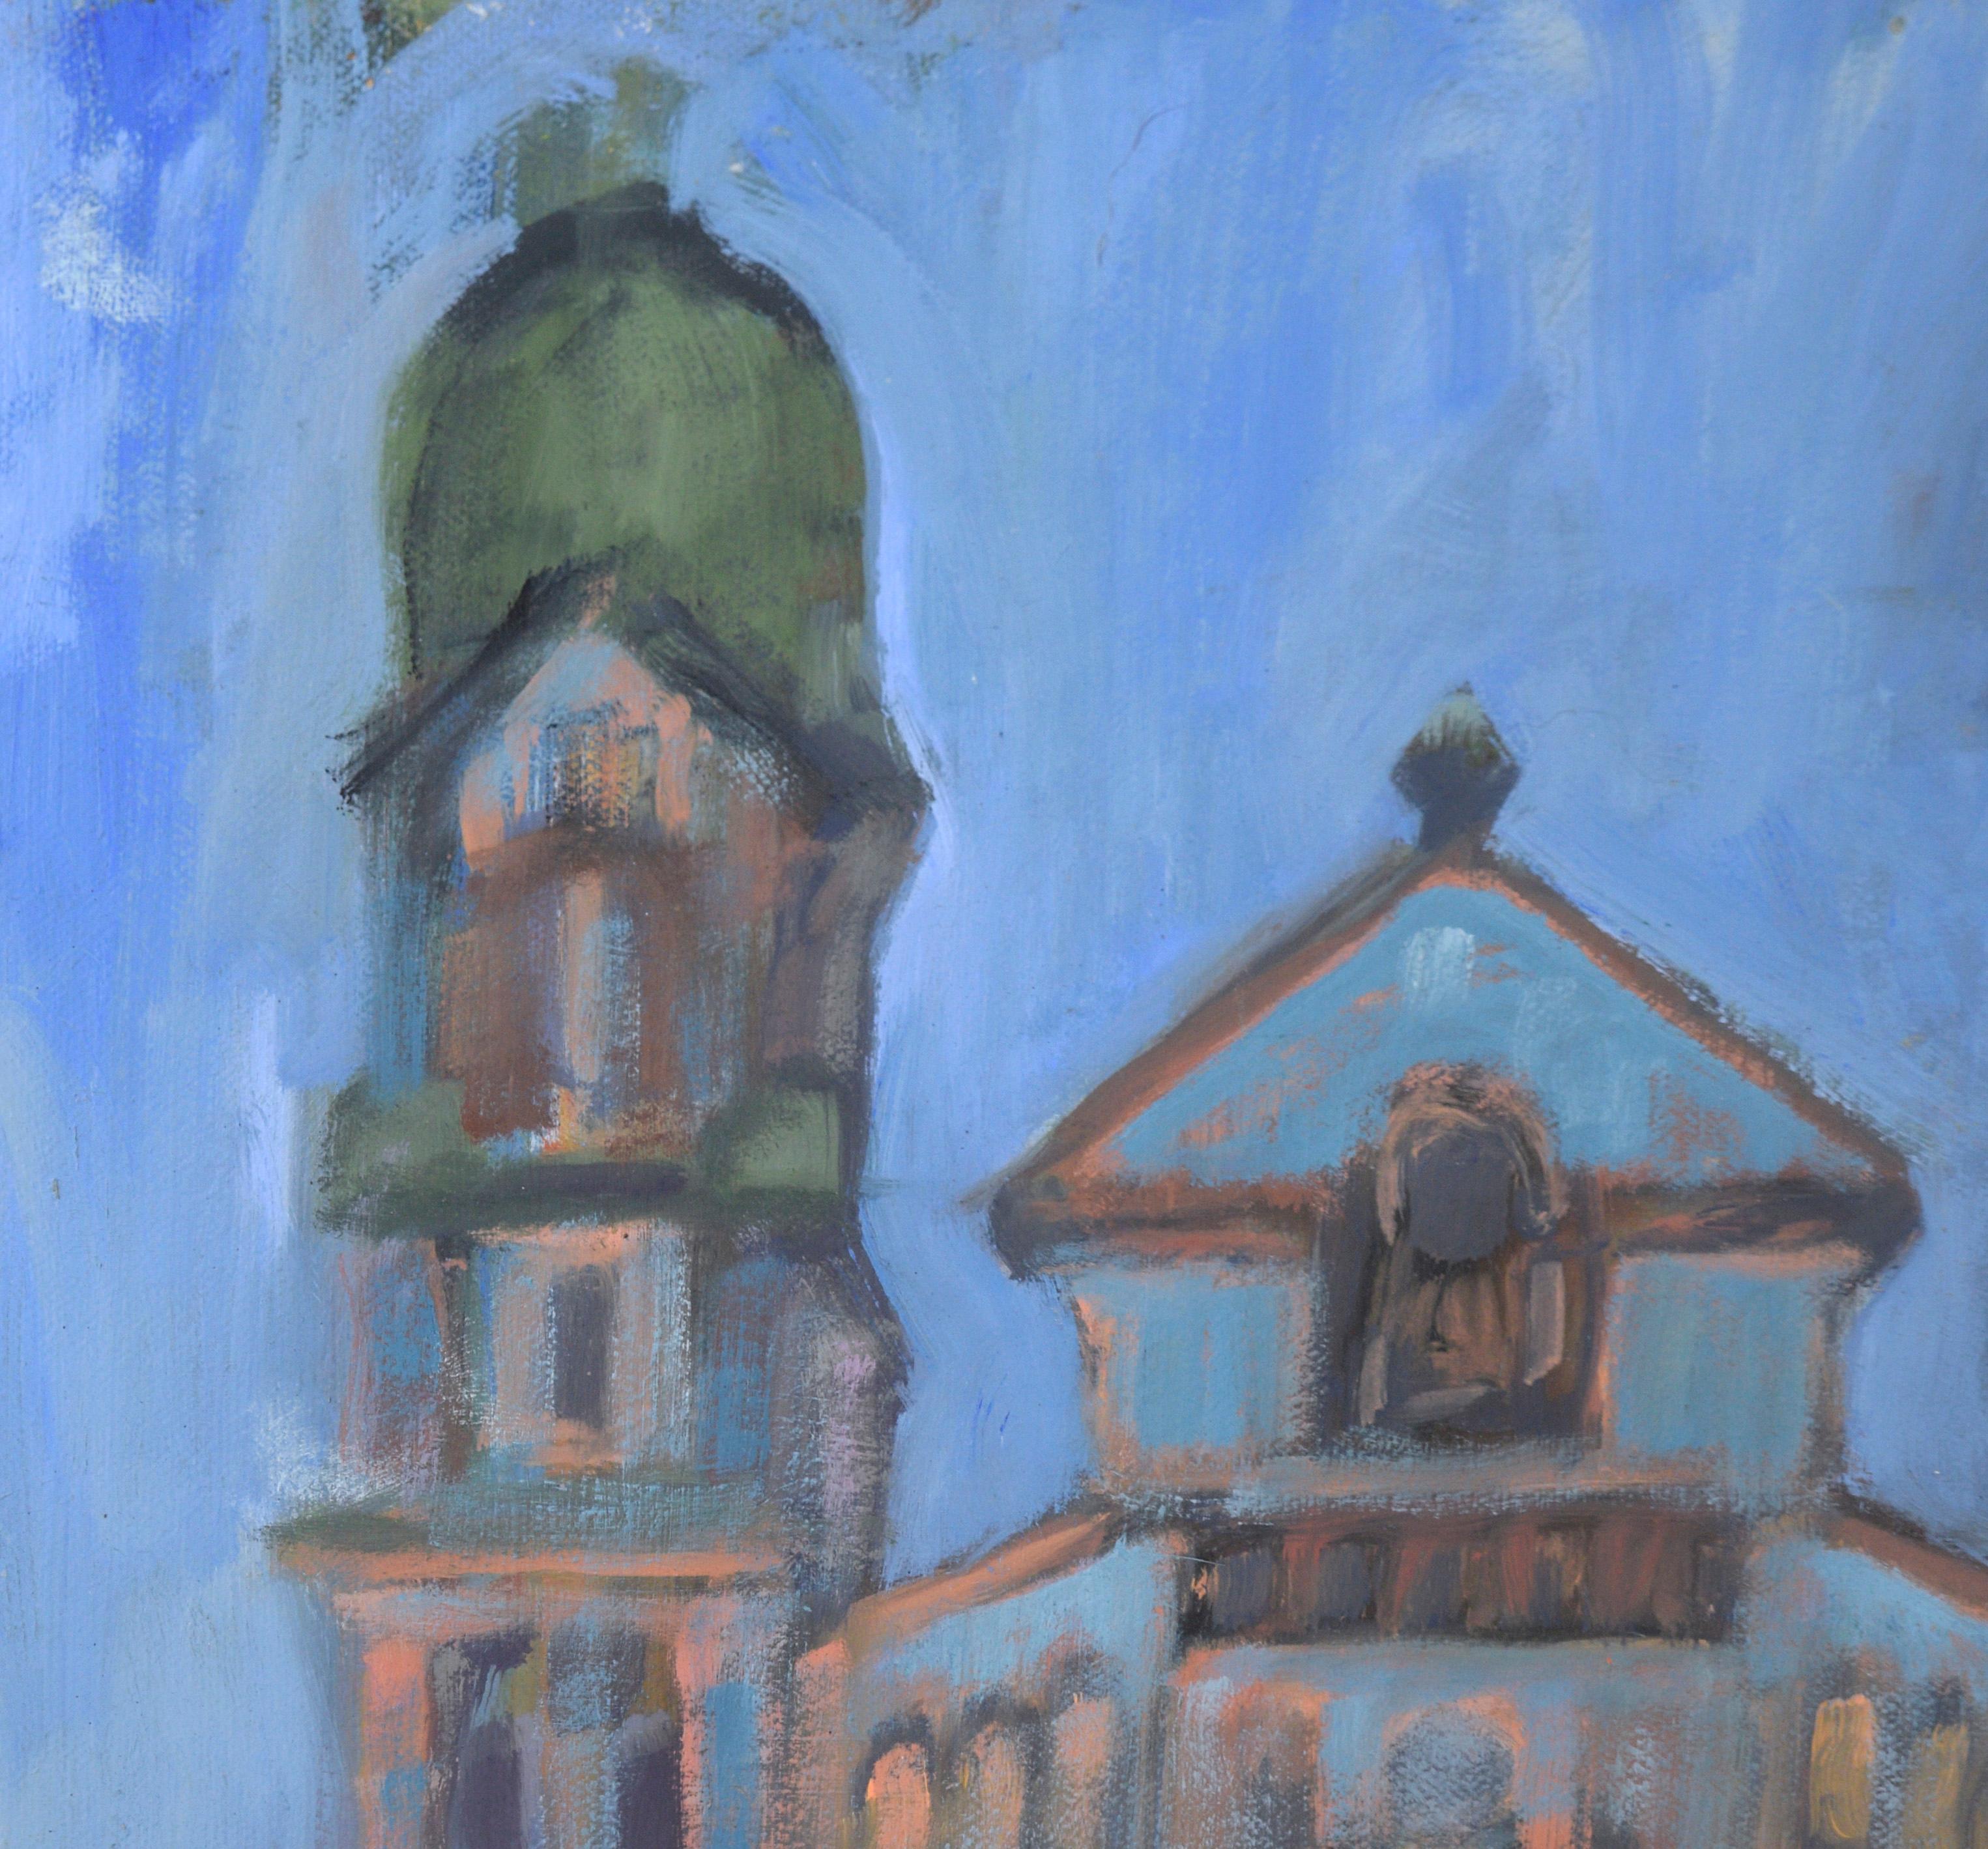 Cathedral mit grünen Kuppeln aus Acryl auf Masonit – Painting von M. Pavao